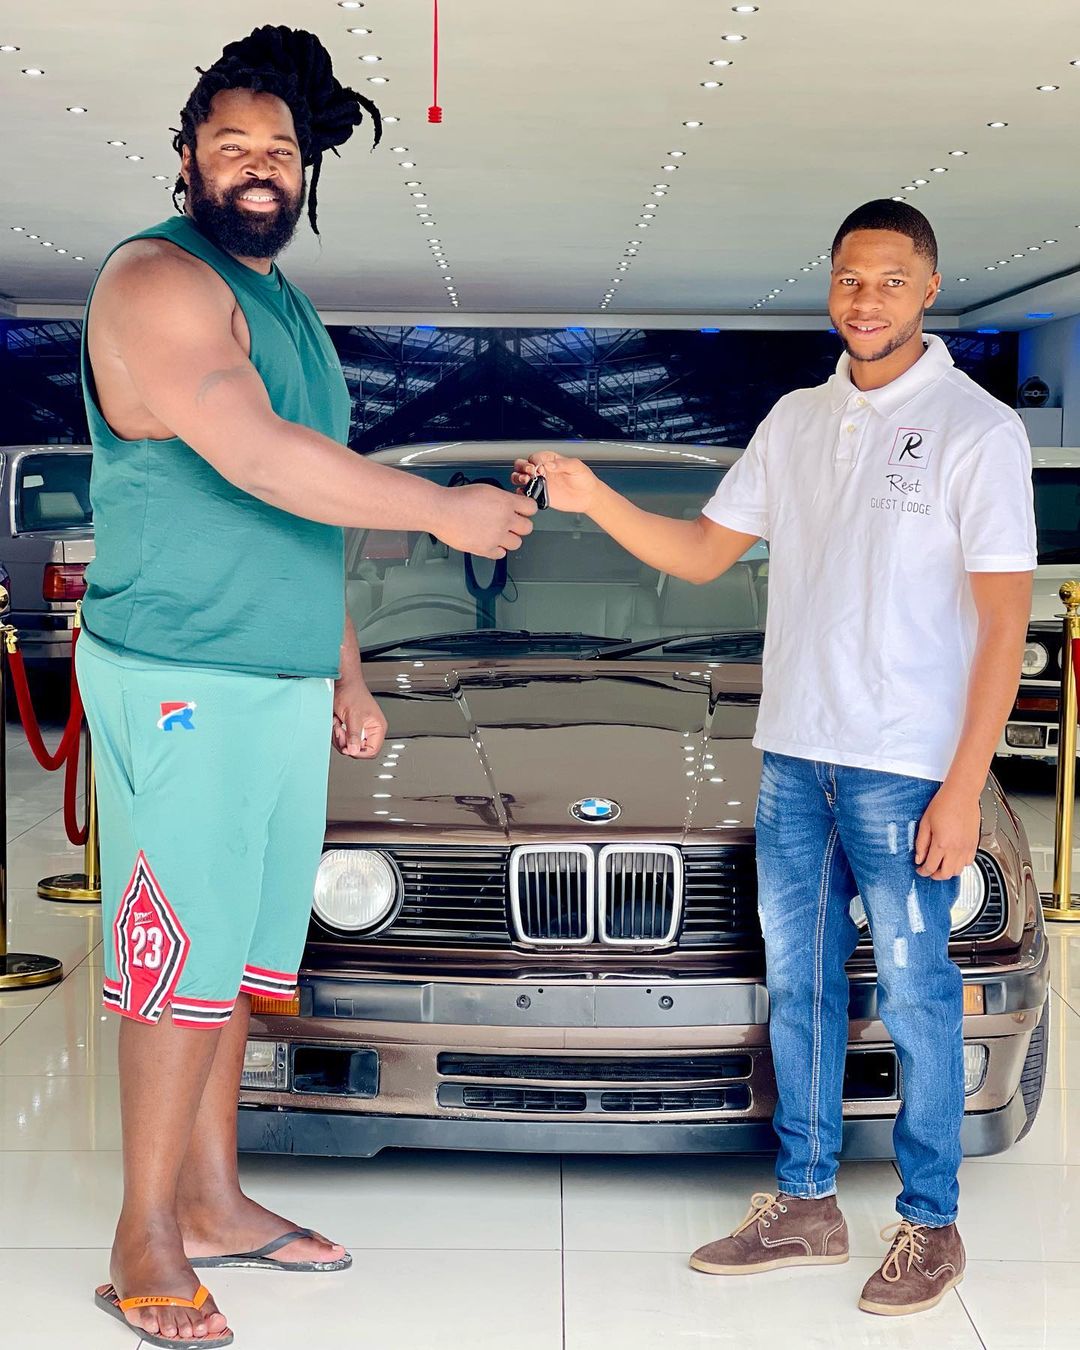 Big Zulu buys a BMW. Source - Instagram